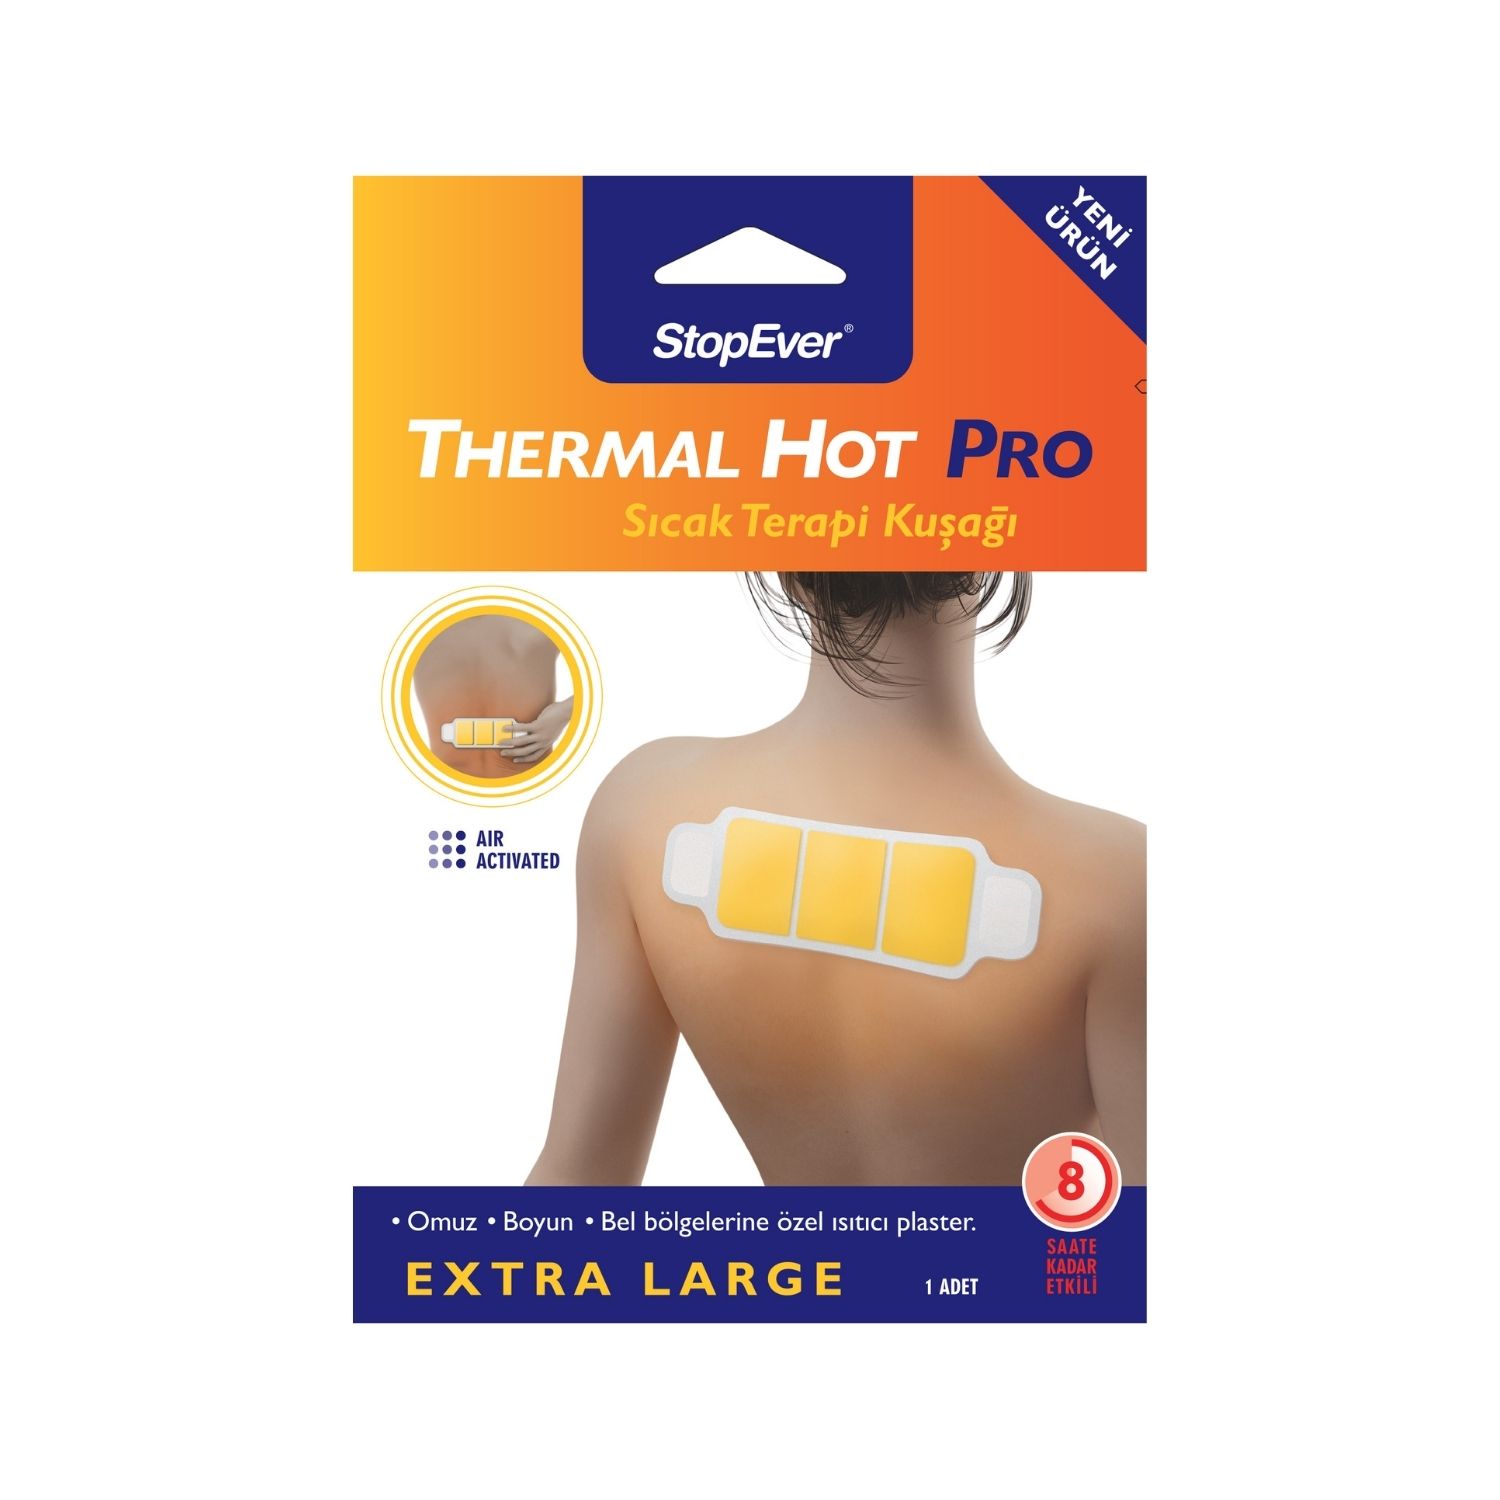 01 StopEver Thermal Hot Pro Sicak Terapi Kusagi Front 1 Stop Ever